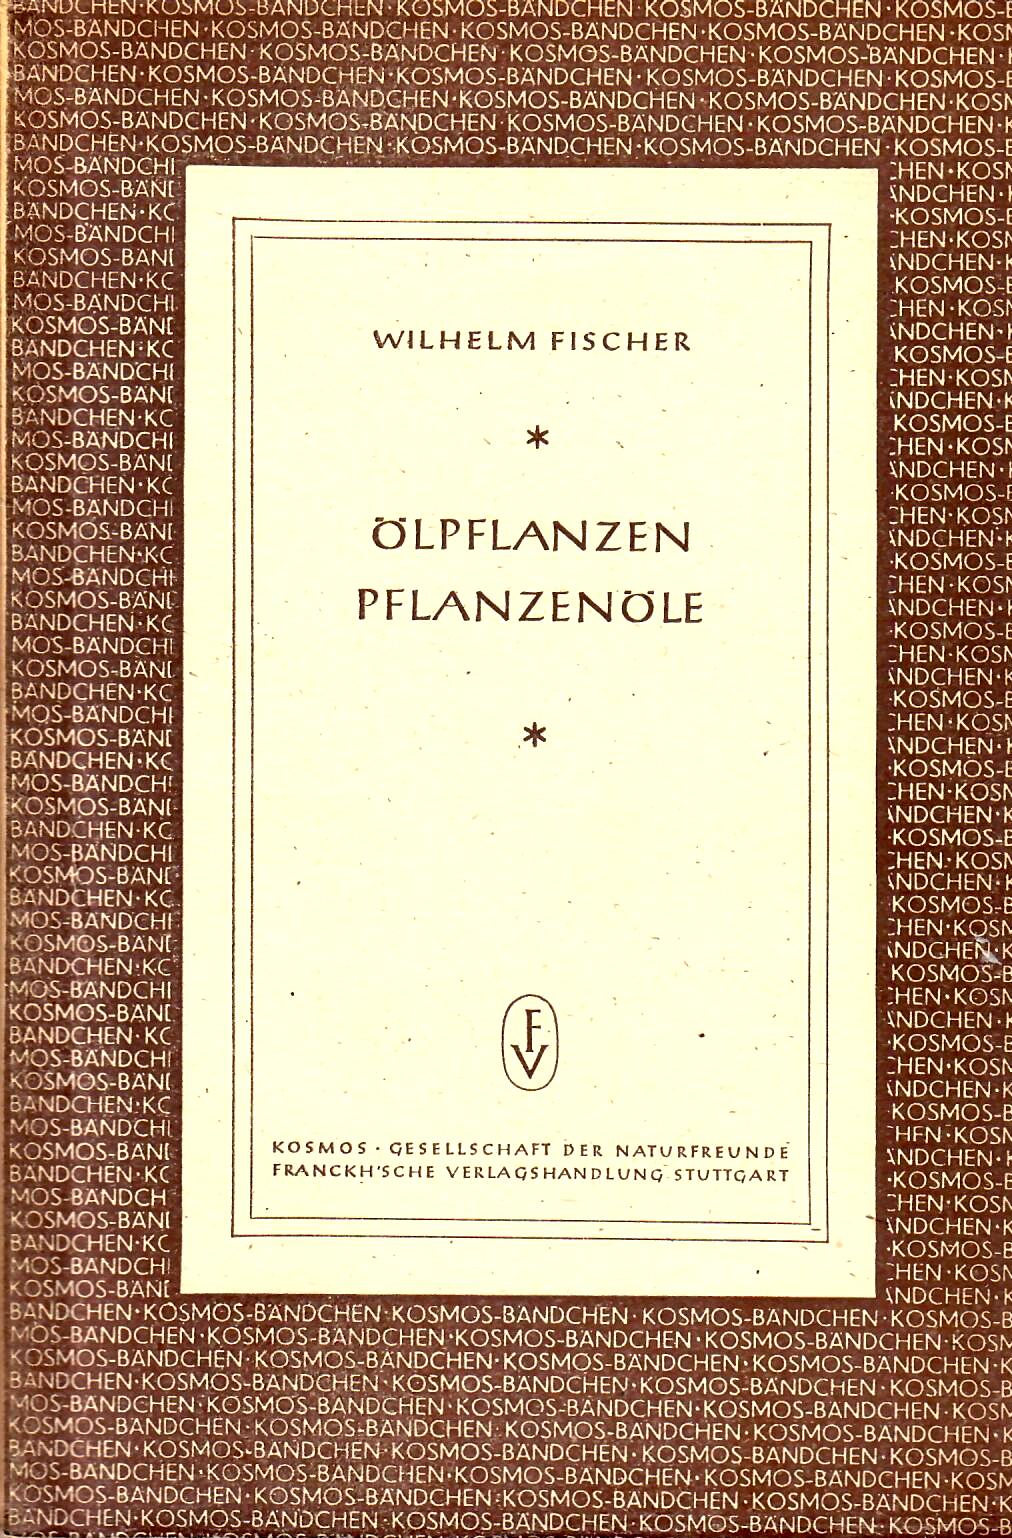 Fischer, Wilhelm   : lpflanzen Pflanzenle : Kosmos-Gesellschaft der Naturfreunde : Stuttgart 1948 : 80 Seiten : sehr guter Zustand : aus dem Nachlass von Dr. Ivan Diehl